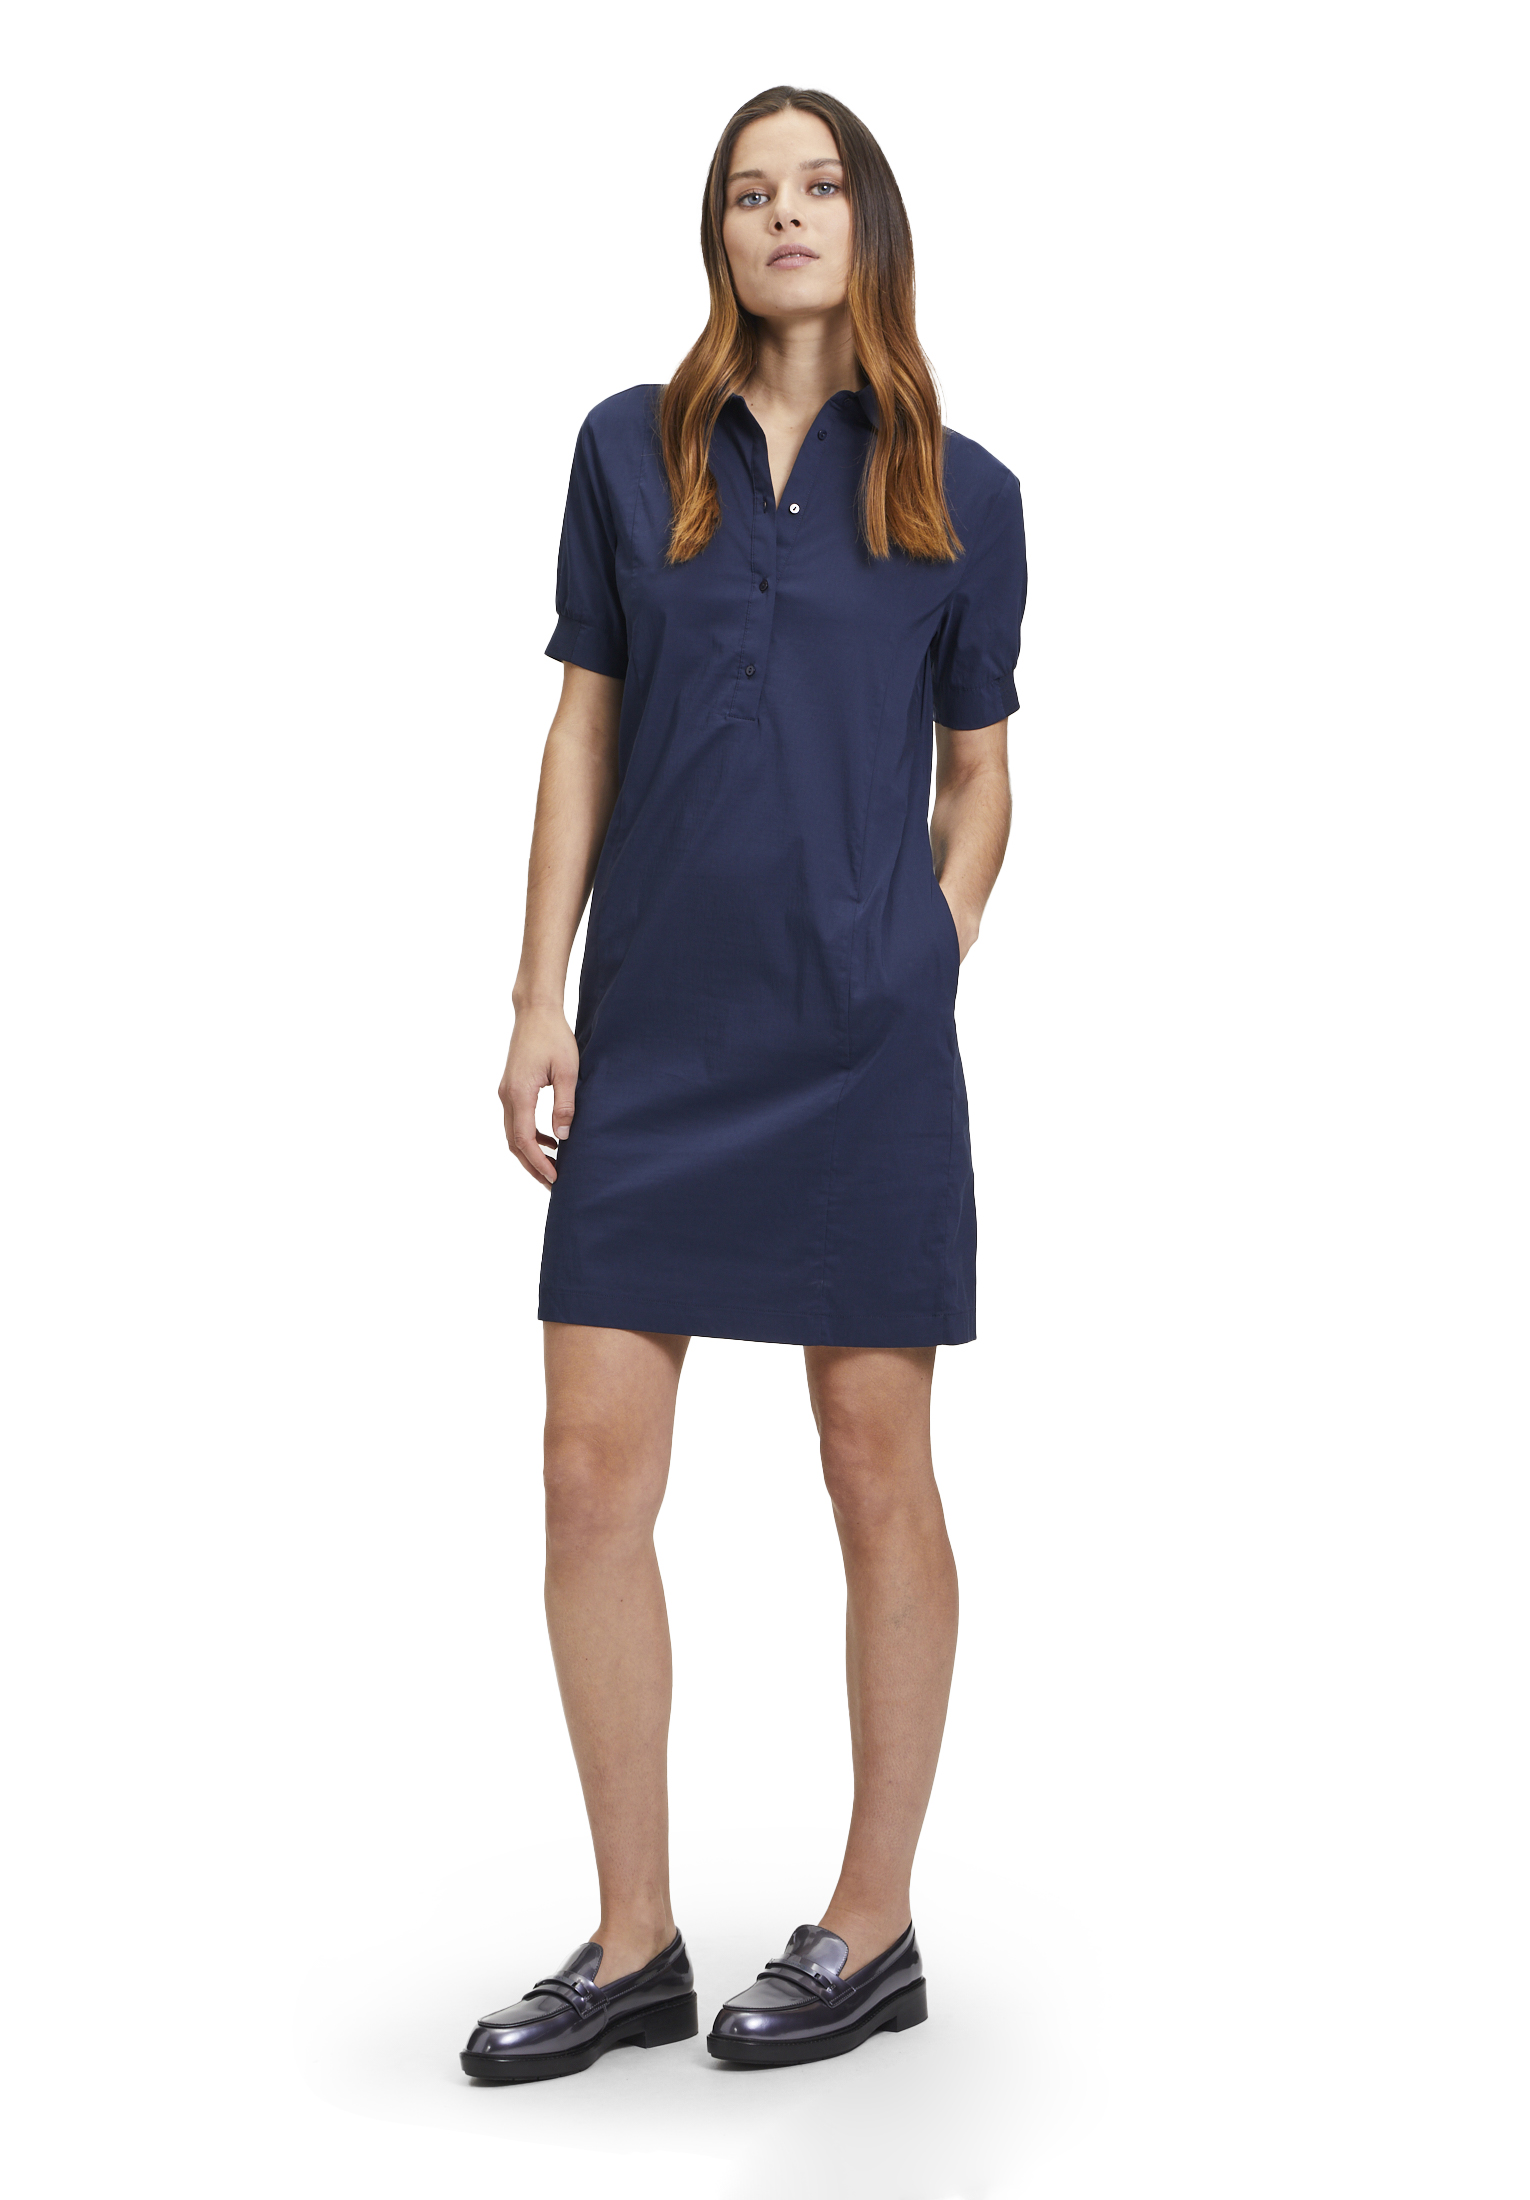 BETTY & CO dámské košilové šaty 1501 3031 8543 Modrá 36